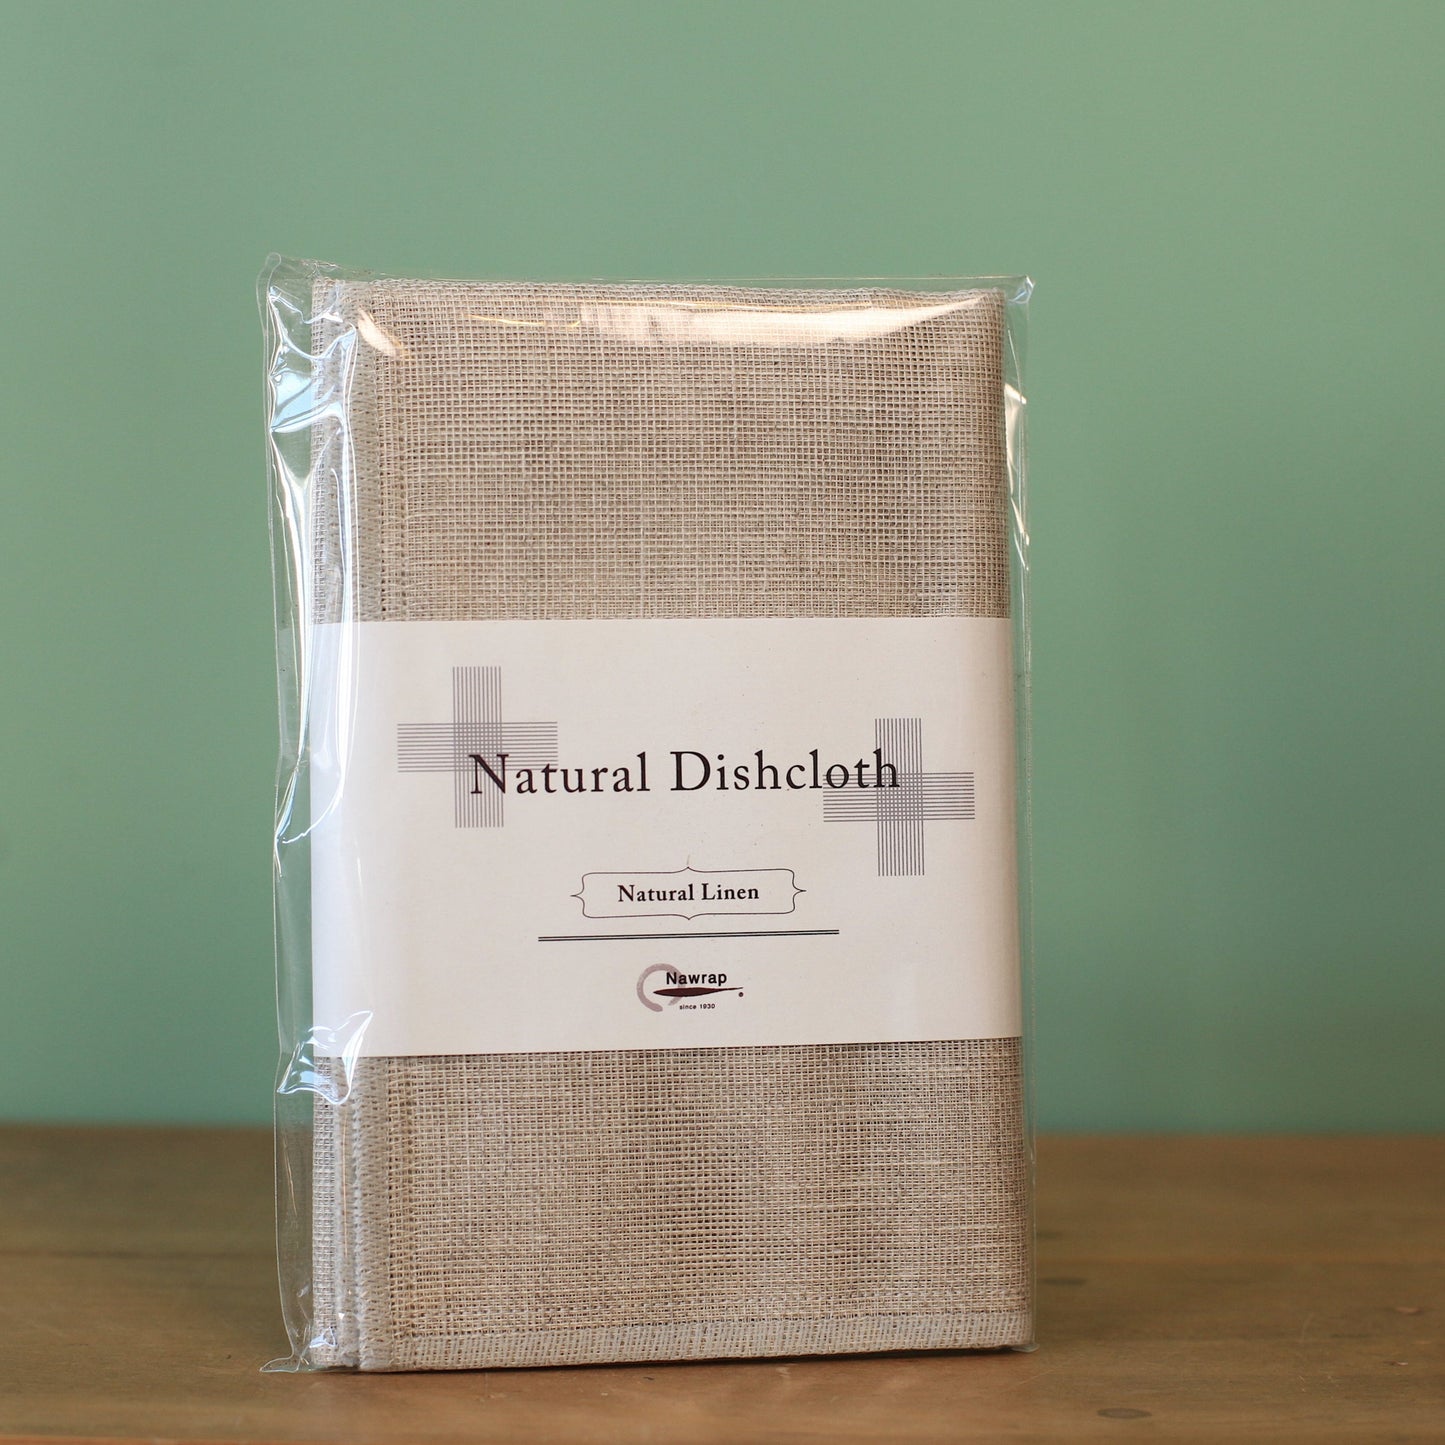 Nawrap Natural Dish Cloth